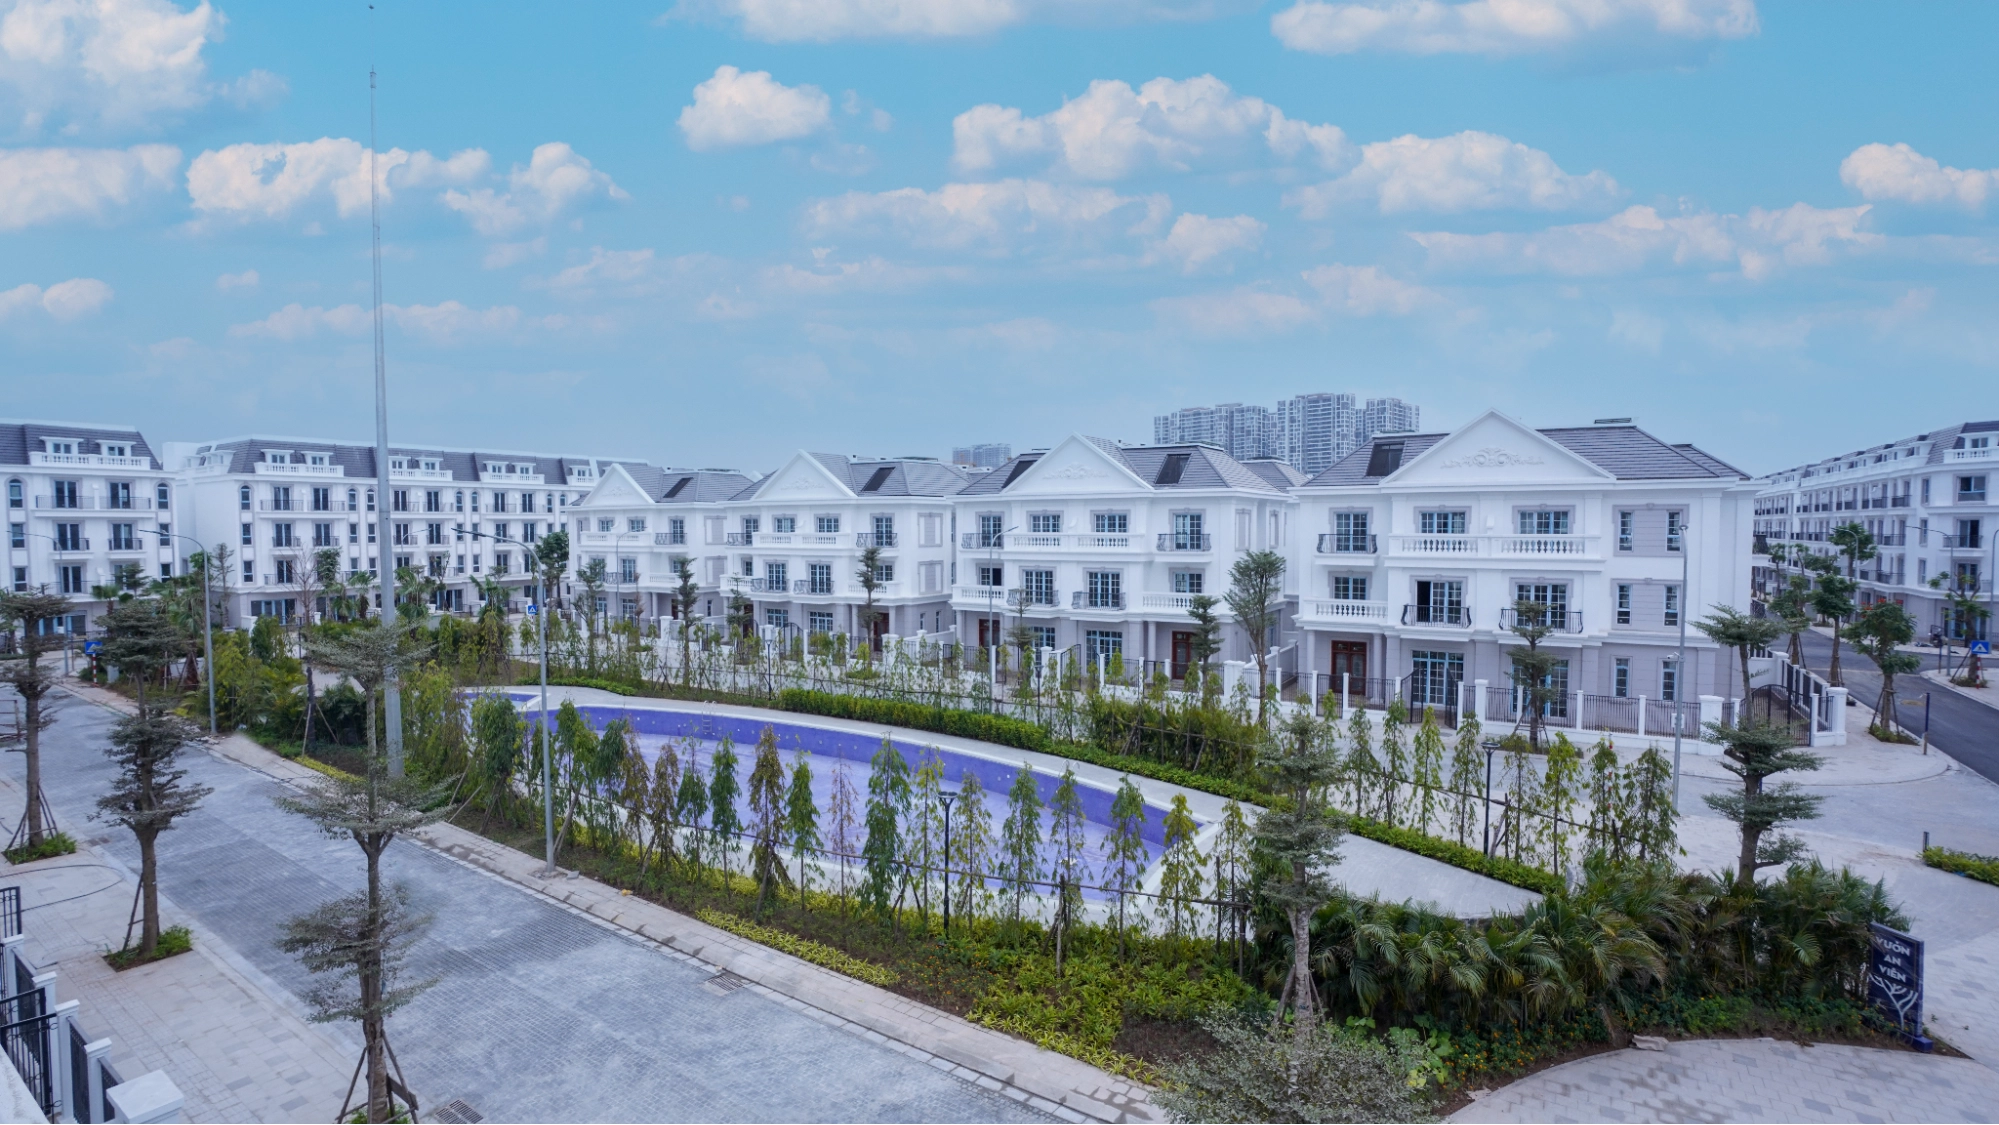 Các bất động sản tại Eurowindow Twin Parks hội tụ cả hai giá trị “xanh” và “thương mại”, giúp chủ nhân nắm giữ tiềm năng gia tăng giá trị vượt trội.